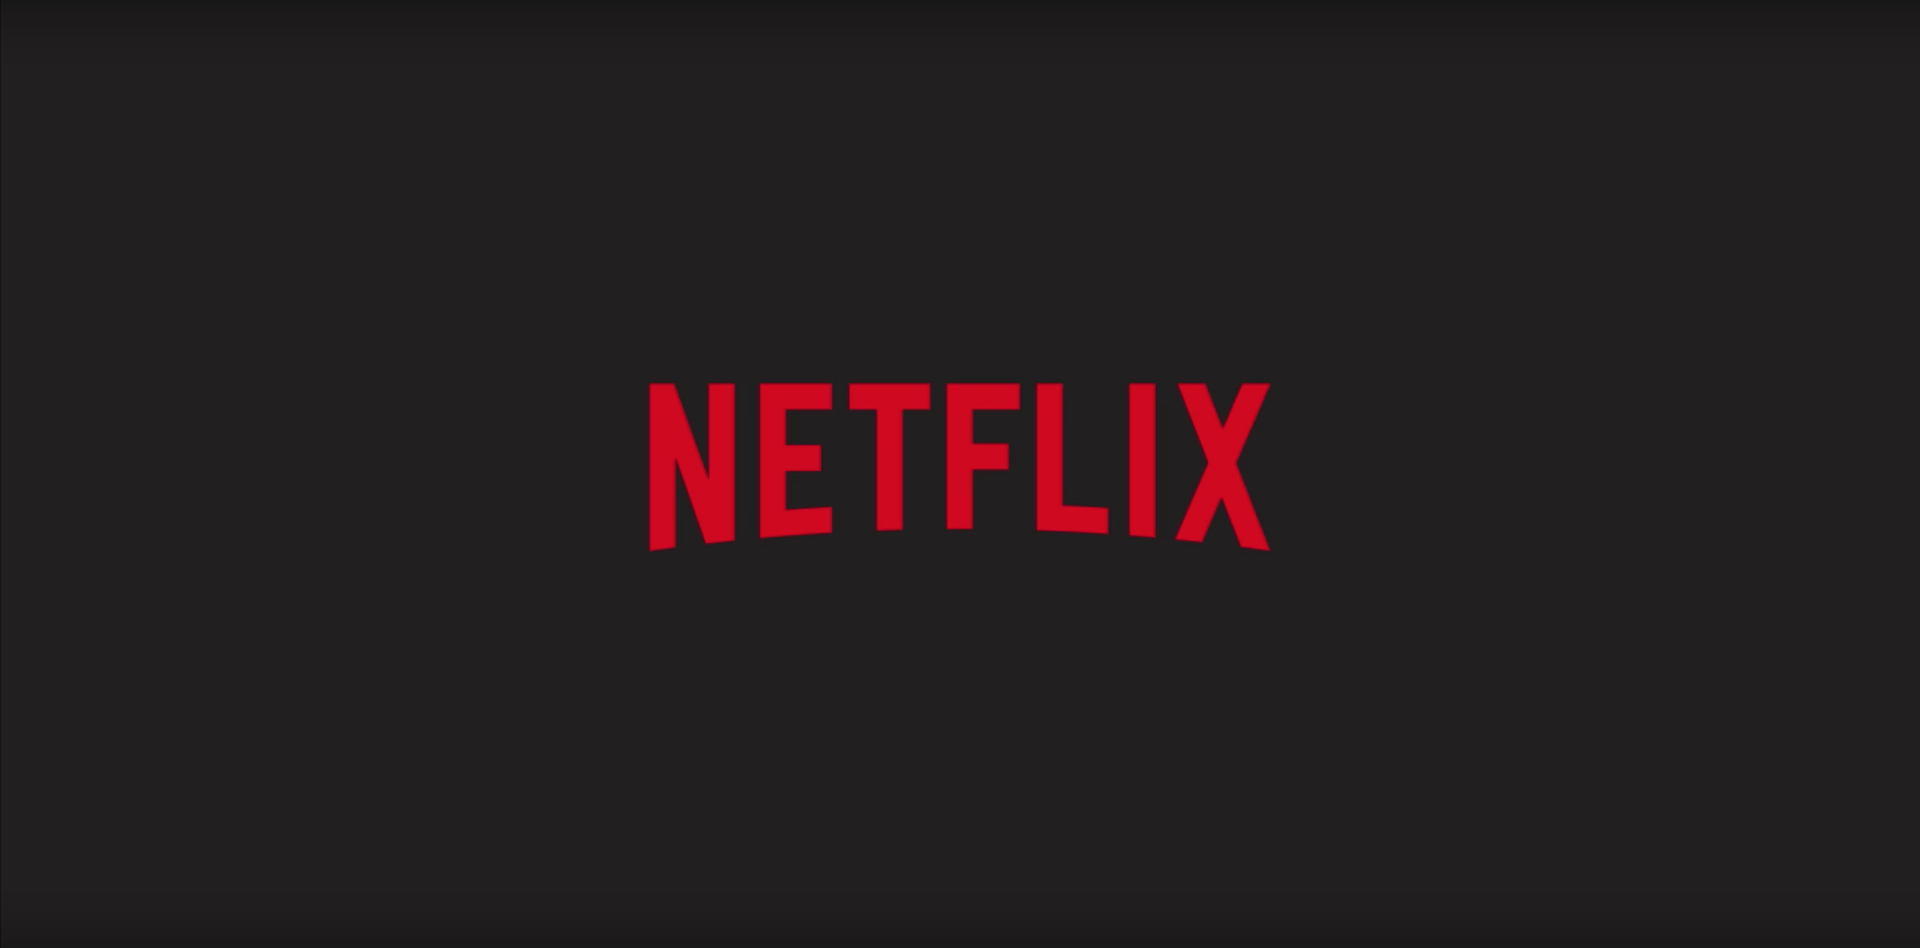 Site revela todas as subcategorias secretas da Netflix